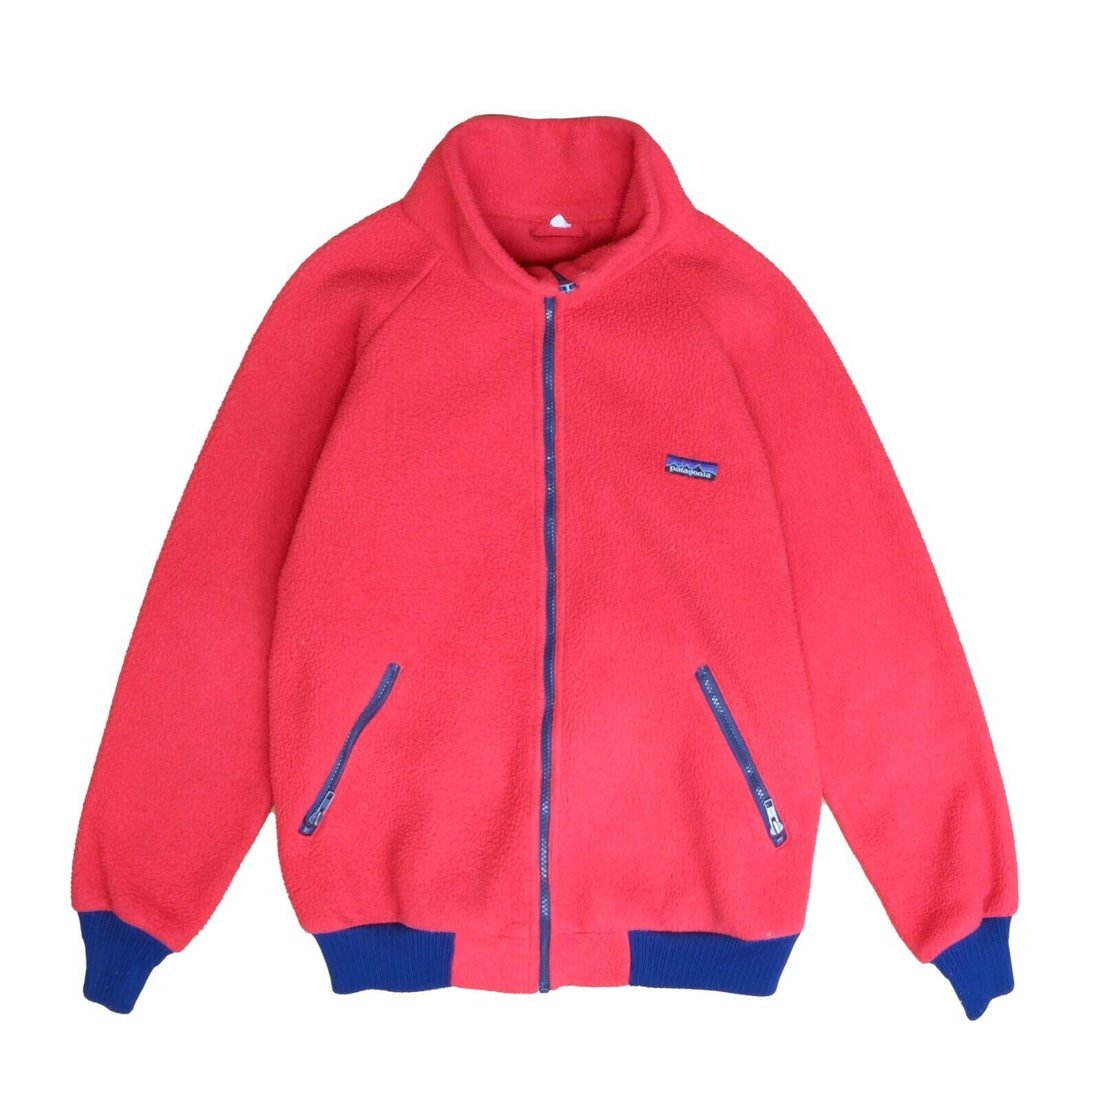 Vintage Patagonia Fleece Jacket Size Large Red Full Zip